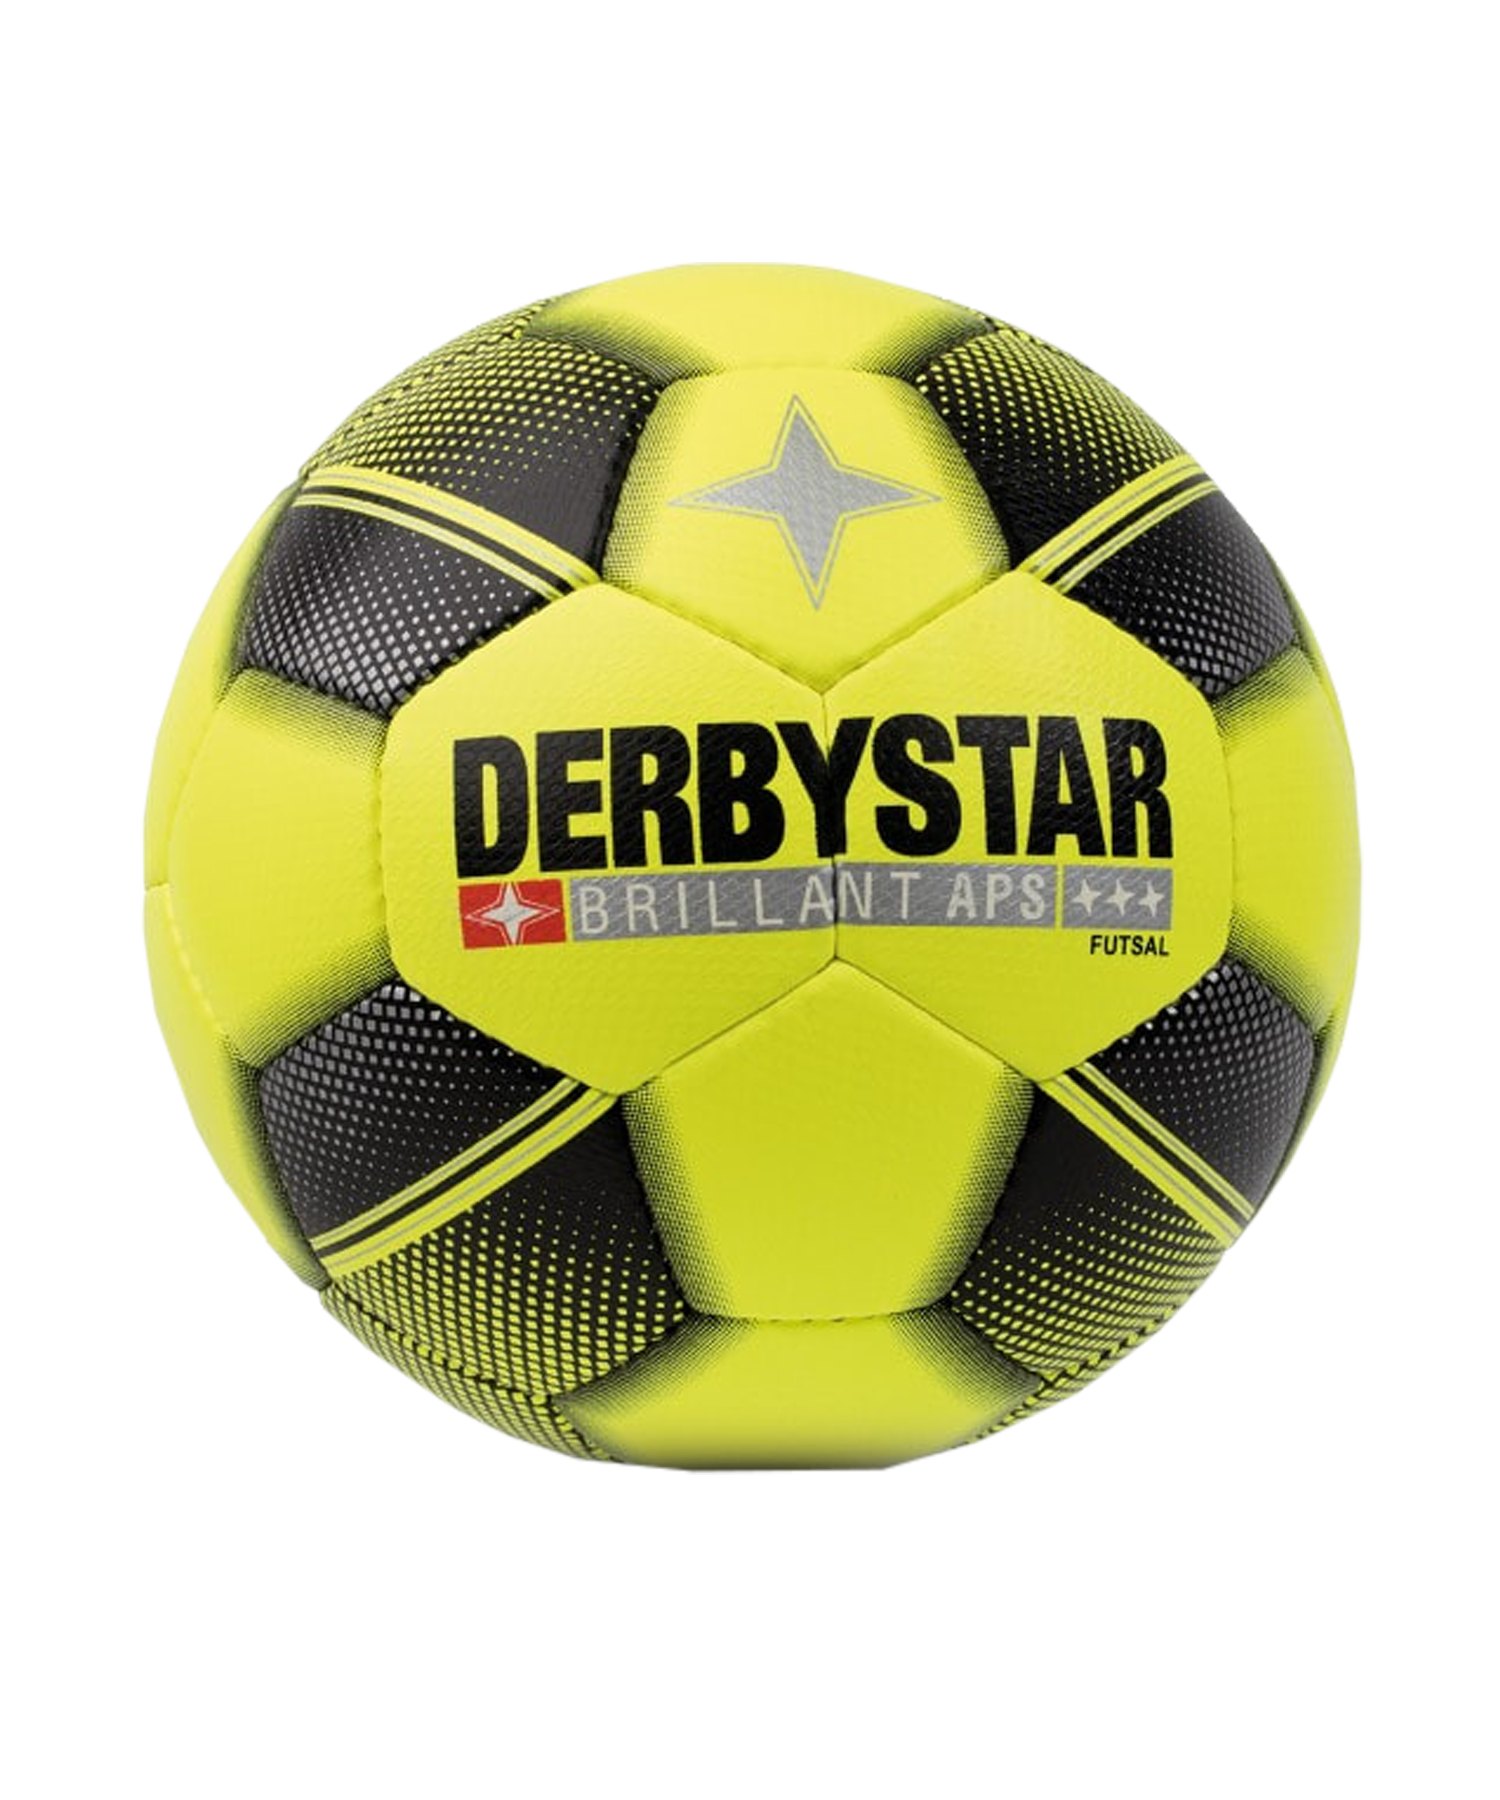 Derbystar Futsal Brill. APS Spielball Gr.4 F592 - gelb